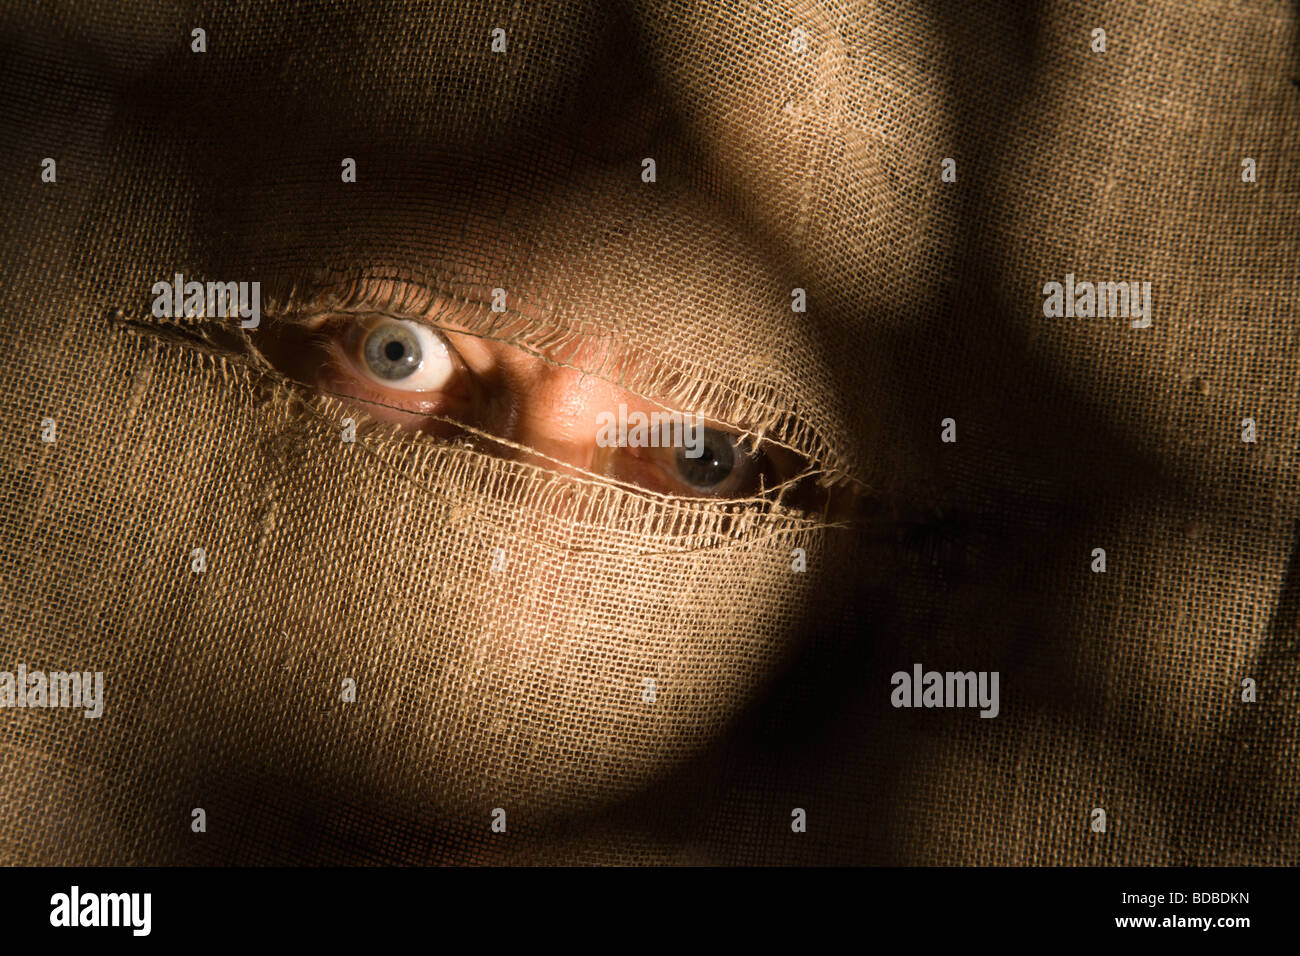 Minaccioso occhi guardano attraverso una fessura strappato il panno. Foto Stock